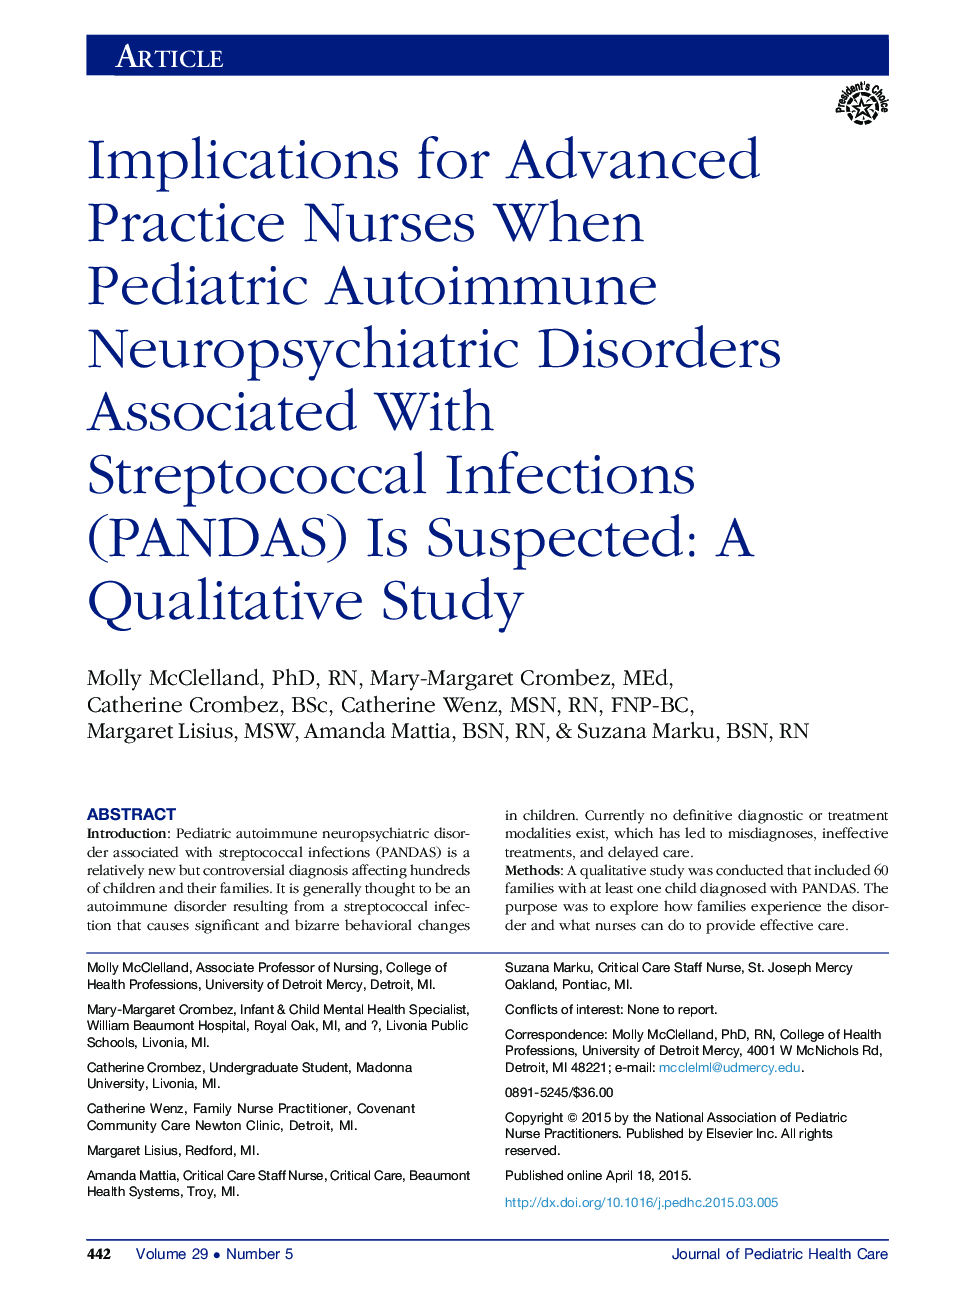 مفاهیم برای پزشک پرستار پیشرفته هنگامی که اختلالات خودایمنی کودکان عصبی مرتبط با استرپتوکوکی عفونت (پانداها) مشکوک است: یک مطالعه کیفی